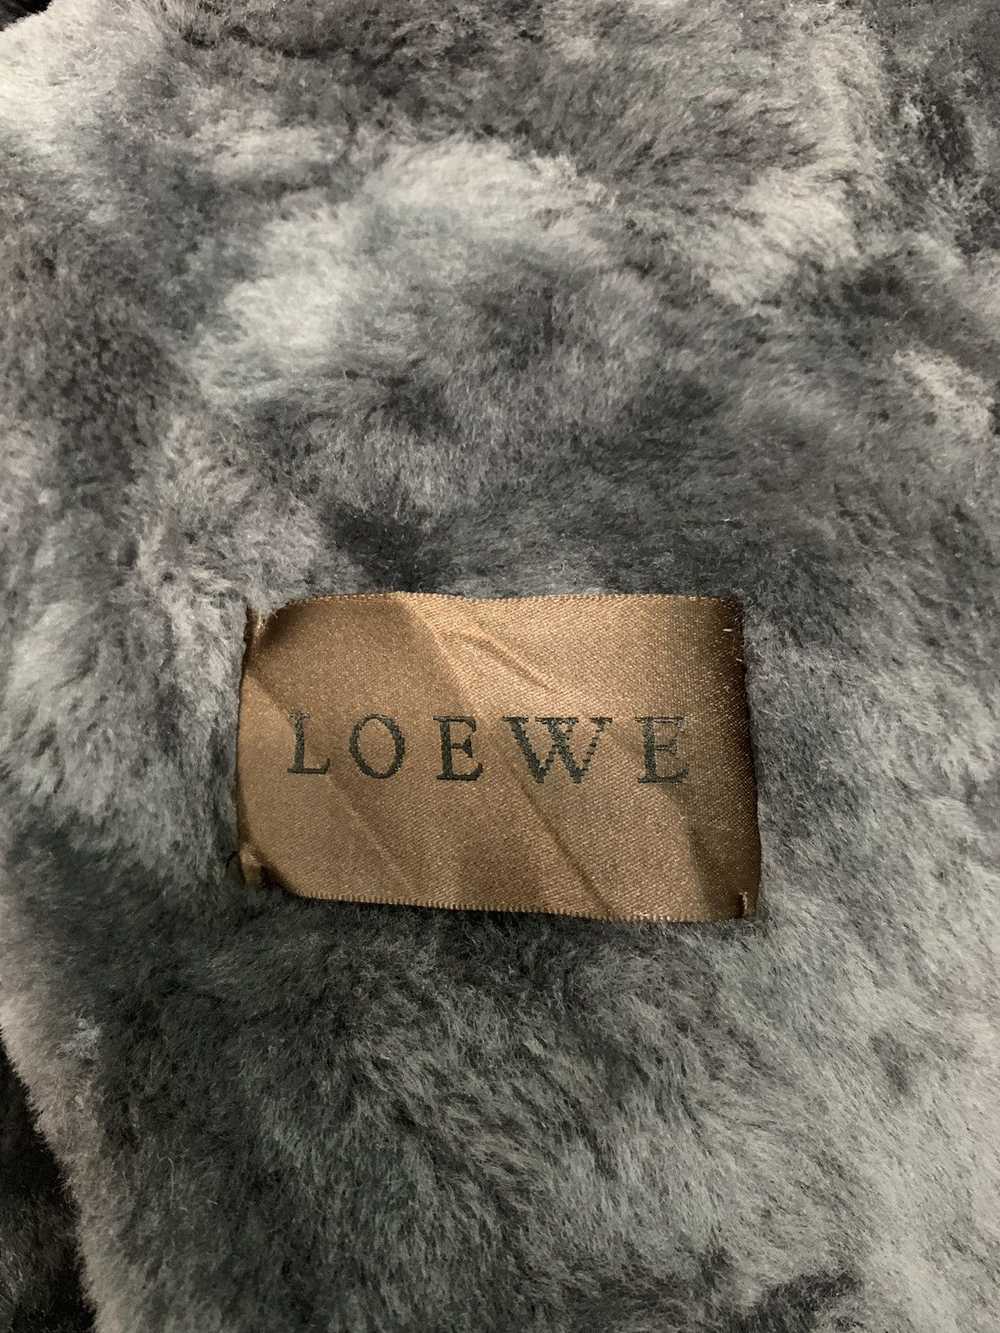 Loewe × Mink Fur Coat × Sheepskin Coat RARE ‼️ LO… - image 9